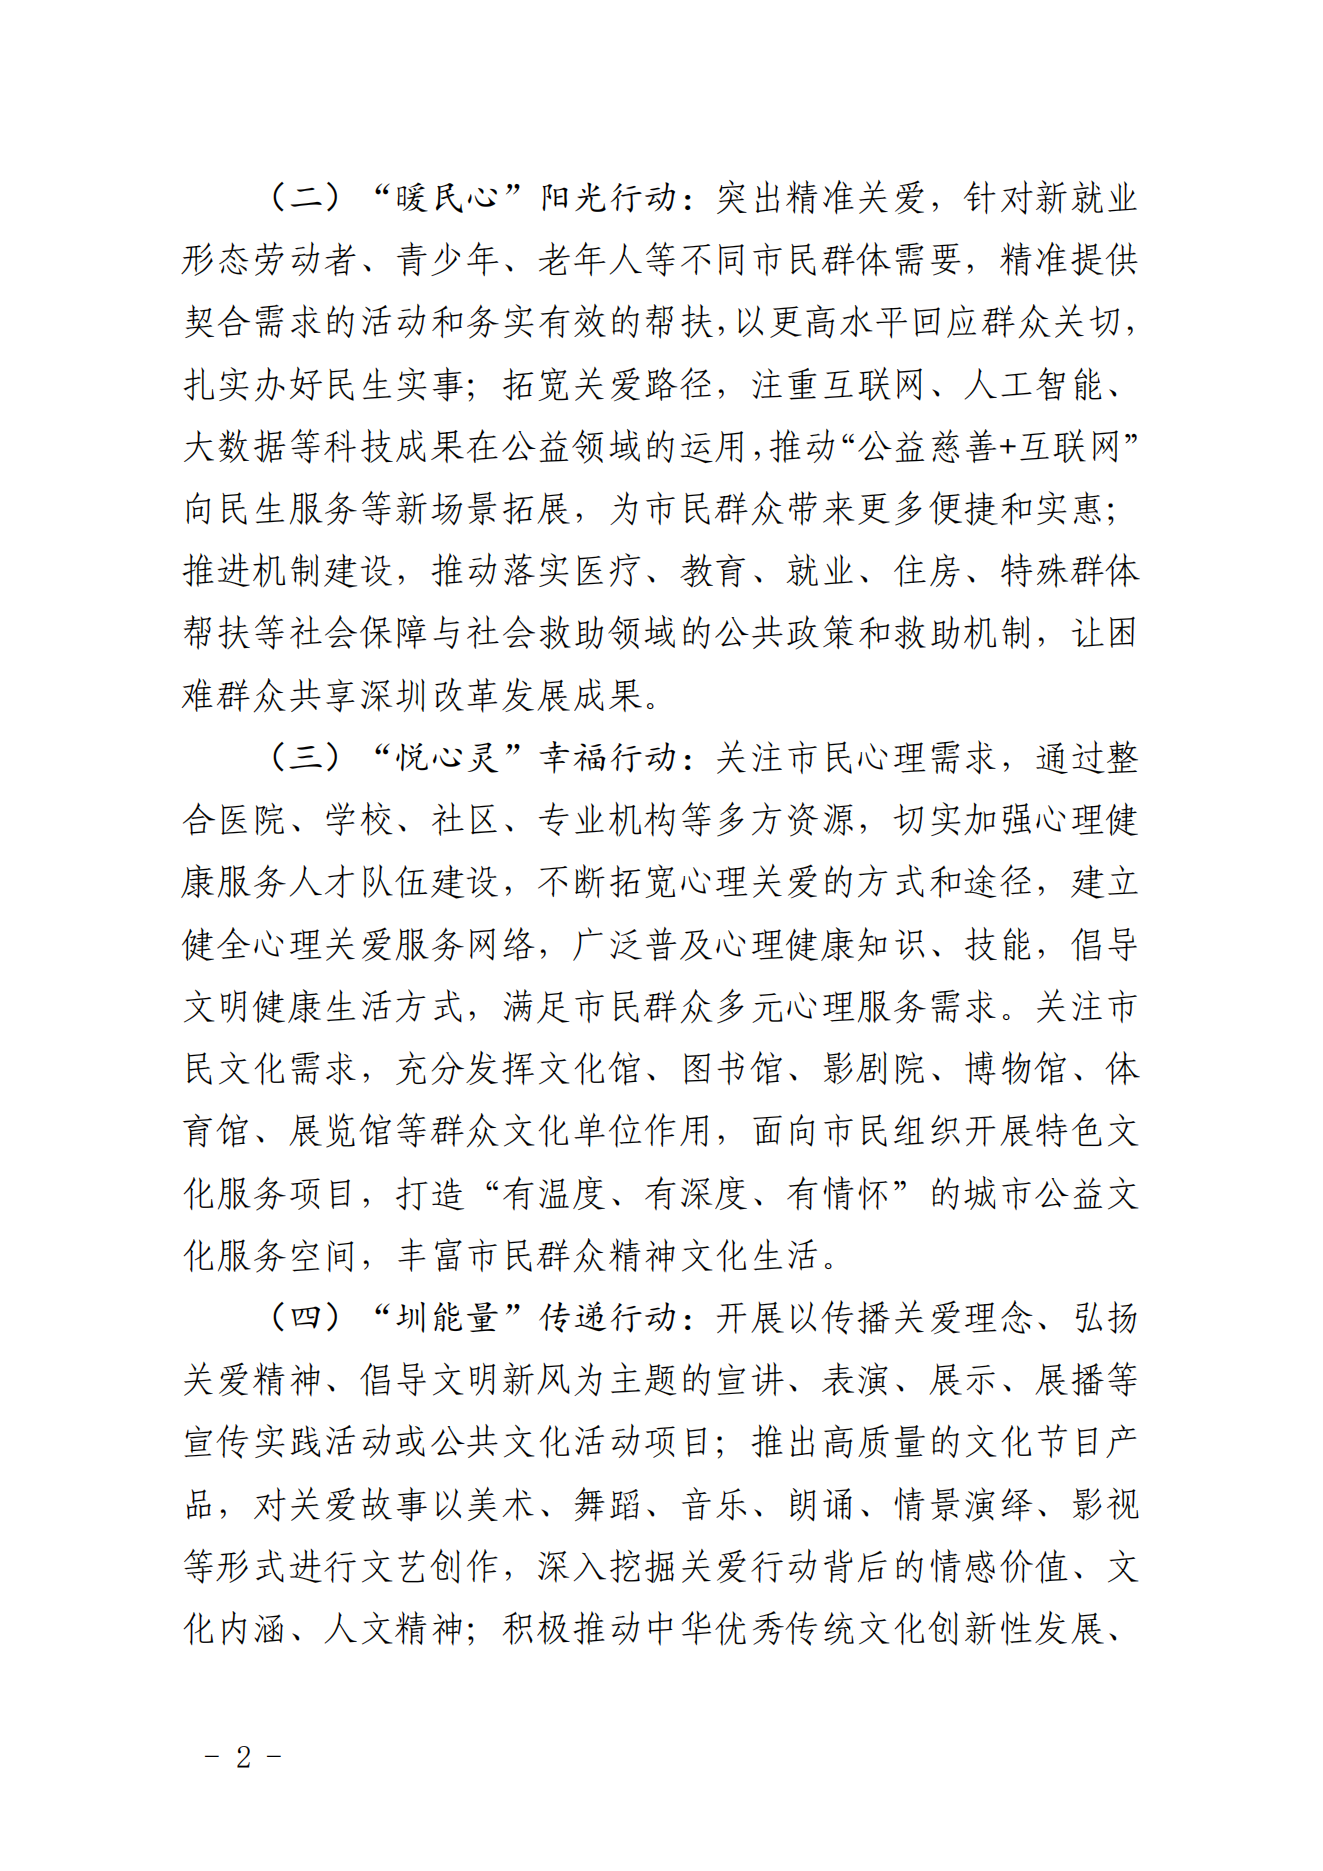 【定稿】关于做好第二十一届深圳关爱行动组织策划和项目申报工作的通知_01.png